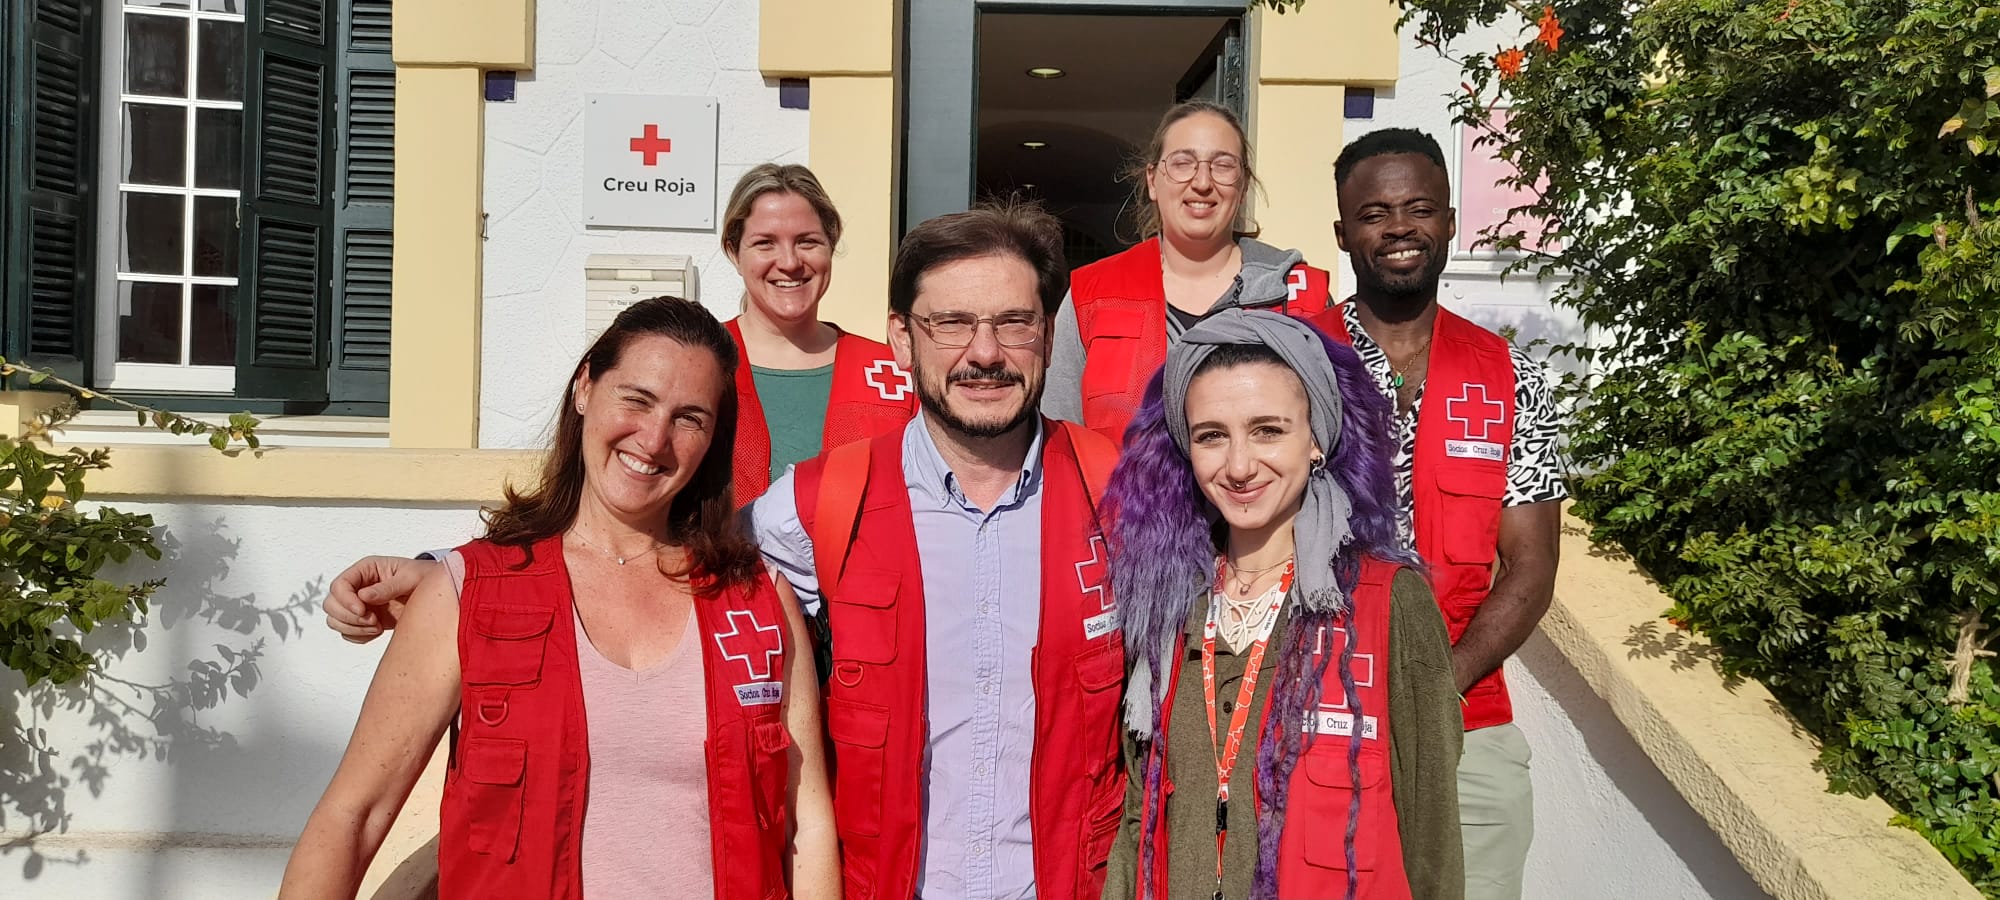 “Tu també pots ser on toca” és la nova campanya de sensibilització de la Creu Roja a Maó per aconseguir noves persones sòcies